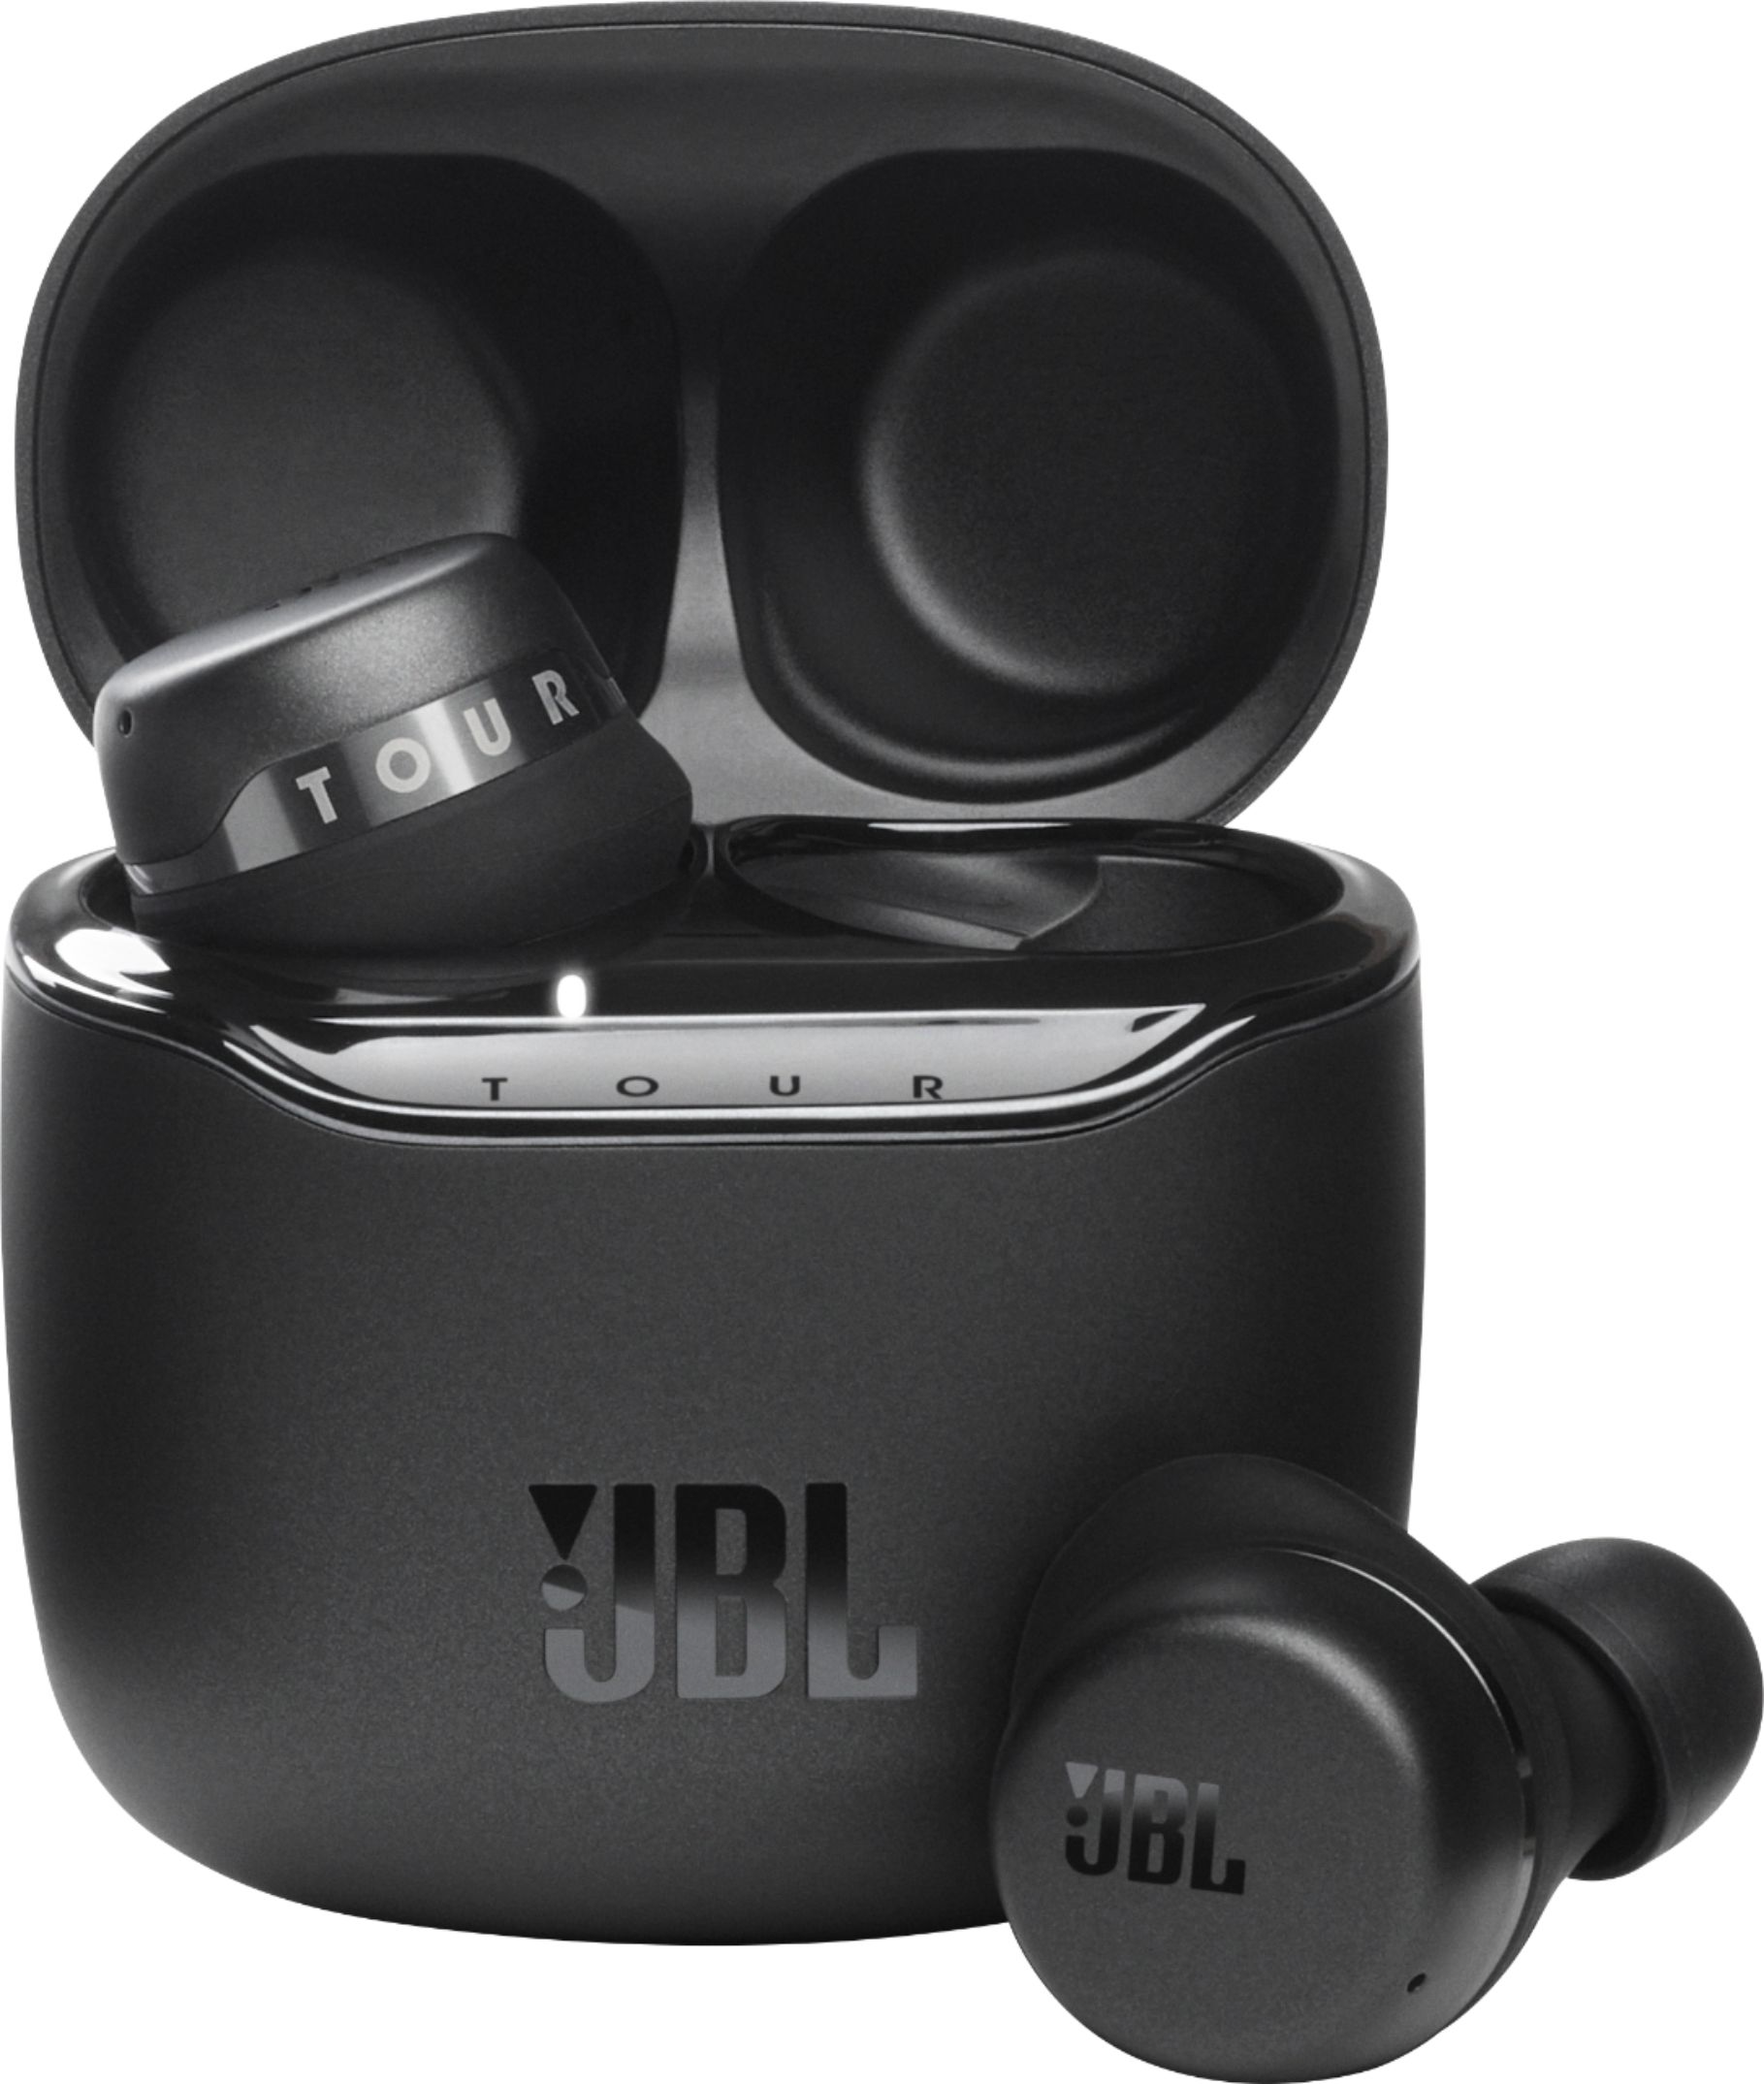 JBL – Tour Pro Plus True Wireless Noise Cancelling Headphones – Black